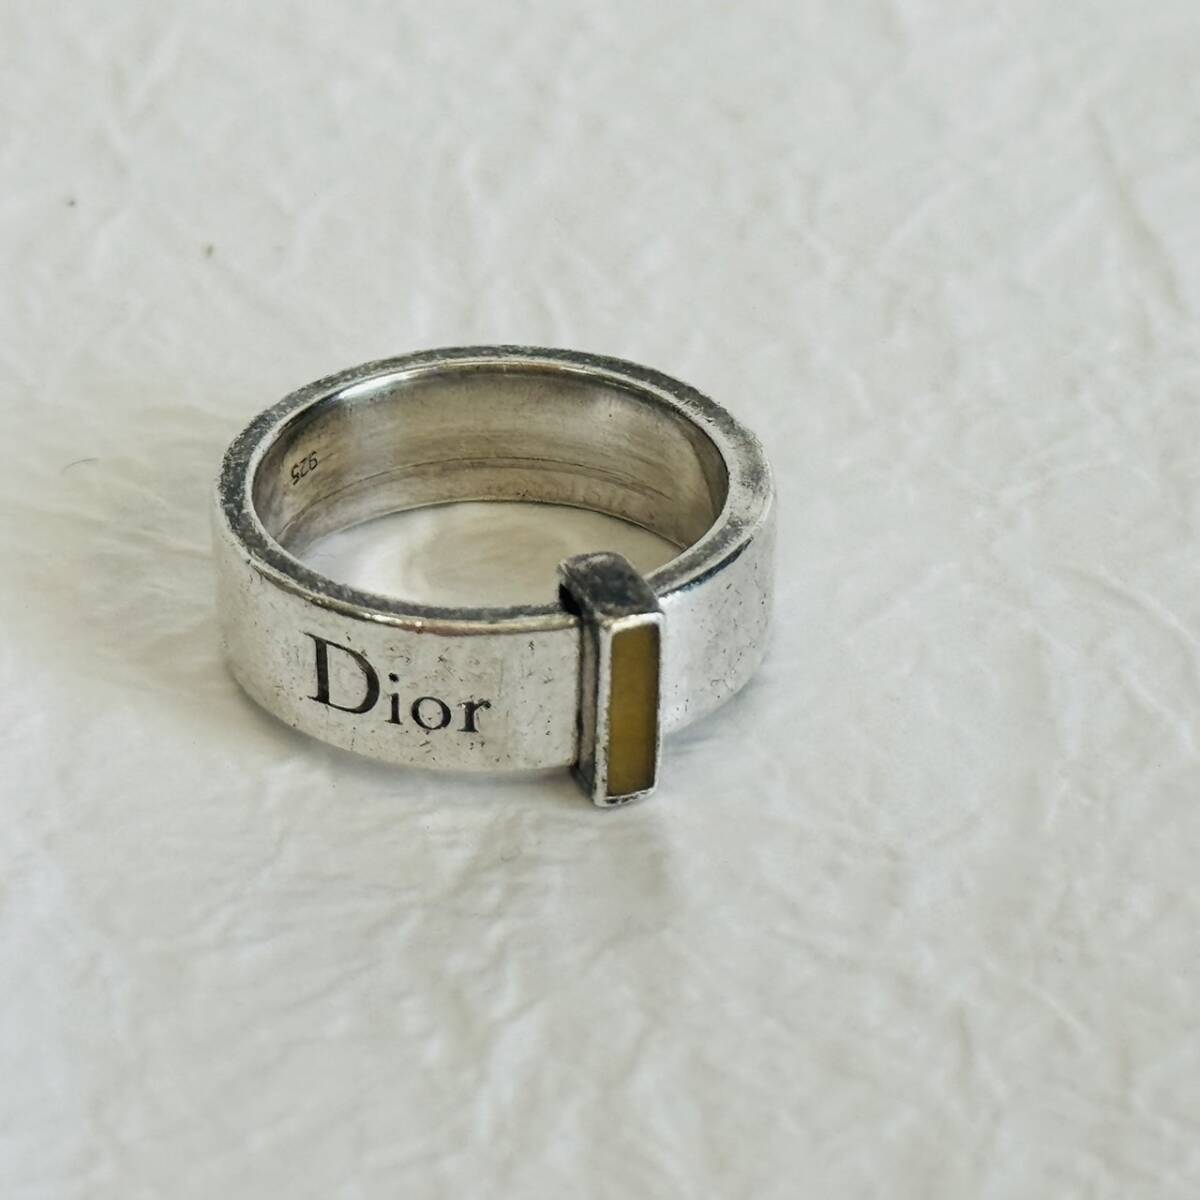 【2186】クリスチャンディオール SV925 リング 14号 指輪 銀 シルバー 7.3g Christian Dior アクセサリー ring accessoryの画像1